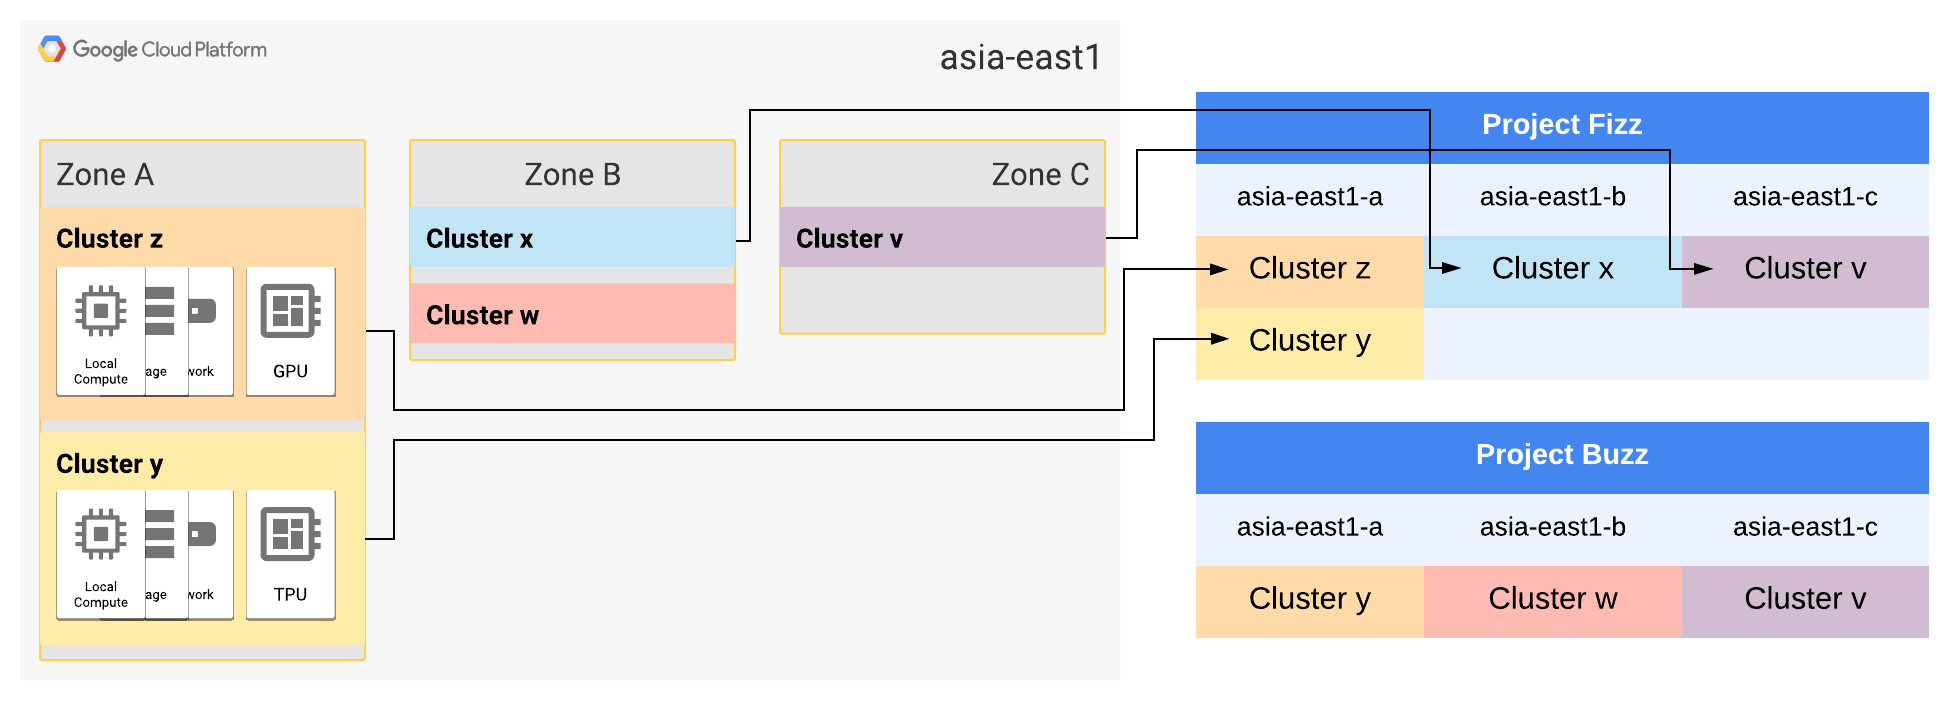 asia-east1 영역 A 및 B는 각각 두 클러스터로 확장됩니다.